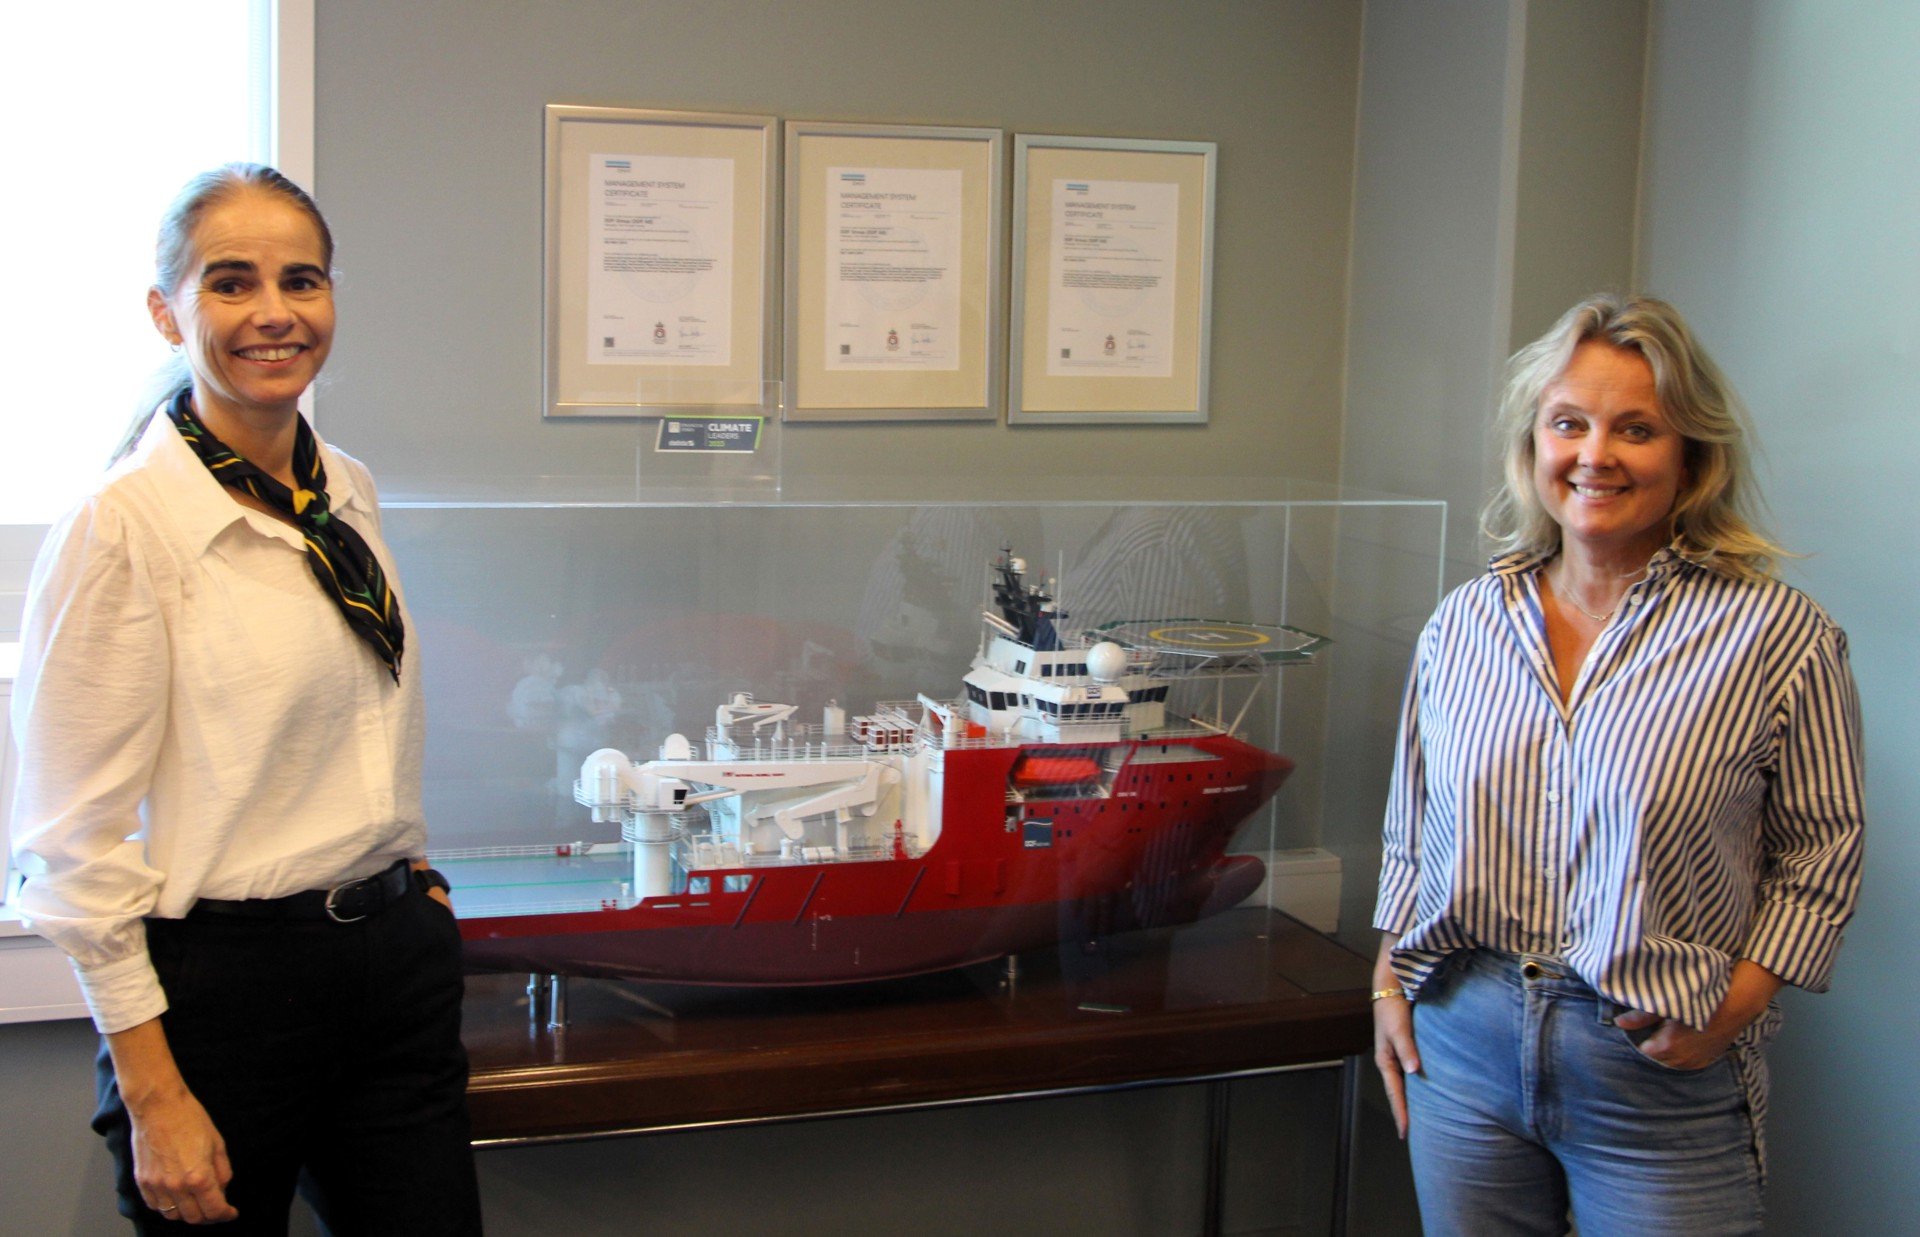 Toril Træen og Marianne Møgster i DOF foran en skipsmodell 